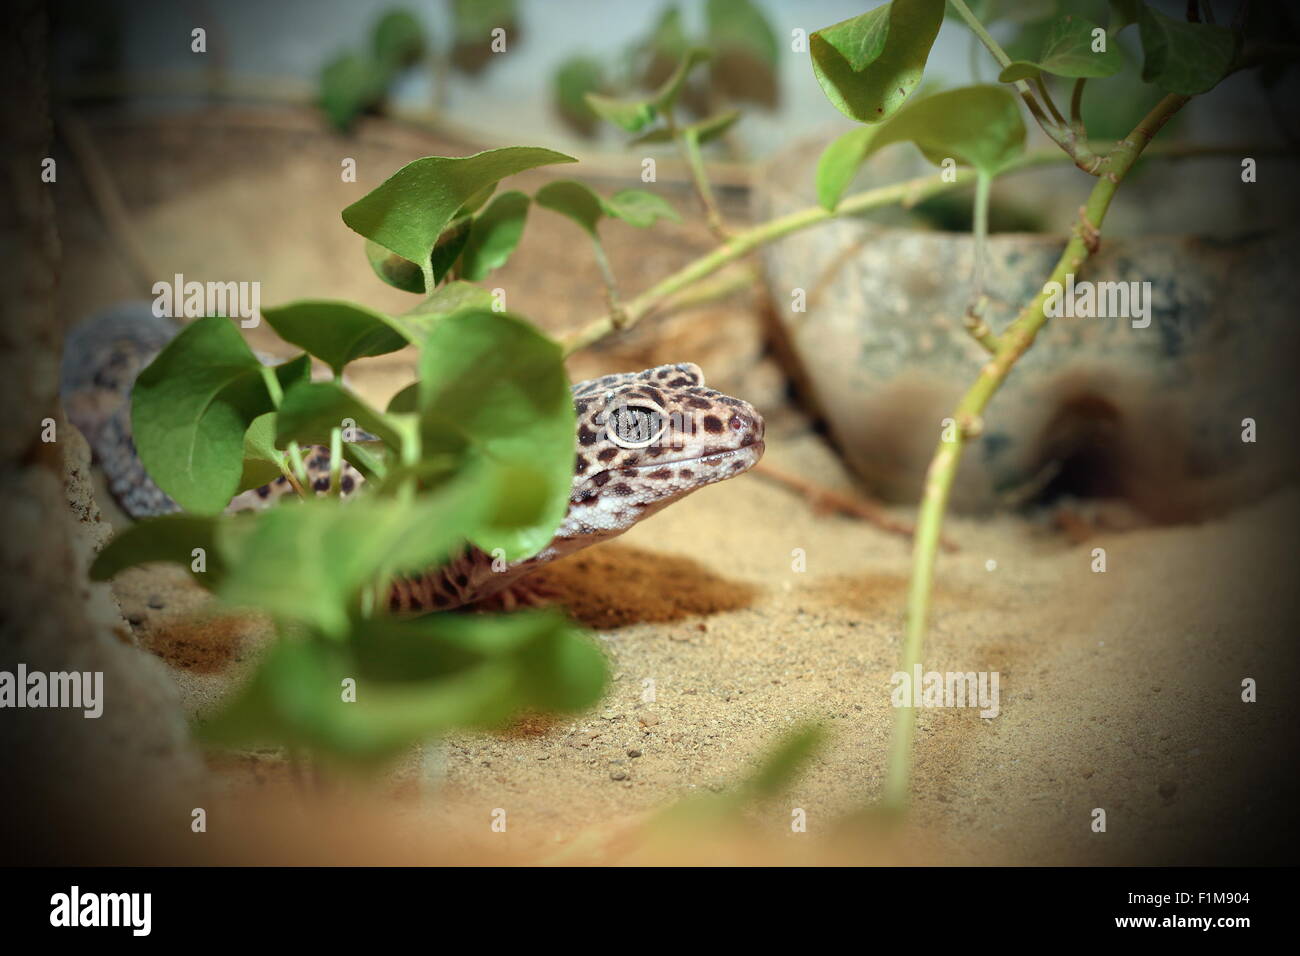 Leopard gekko lizard nascosti su un terrario Foto Stock